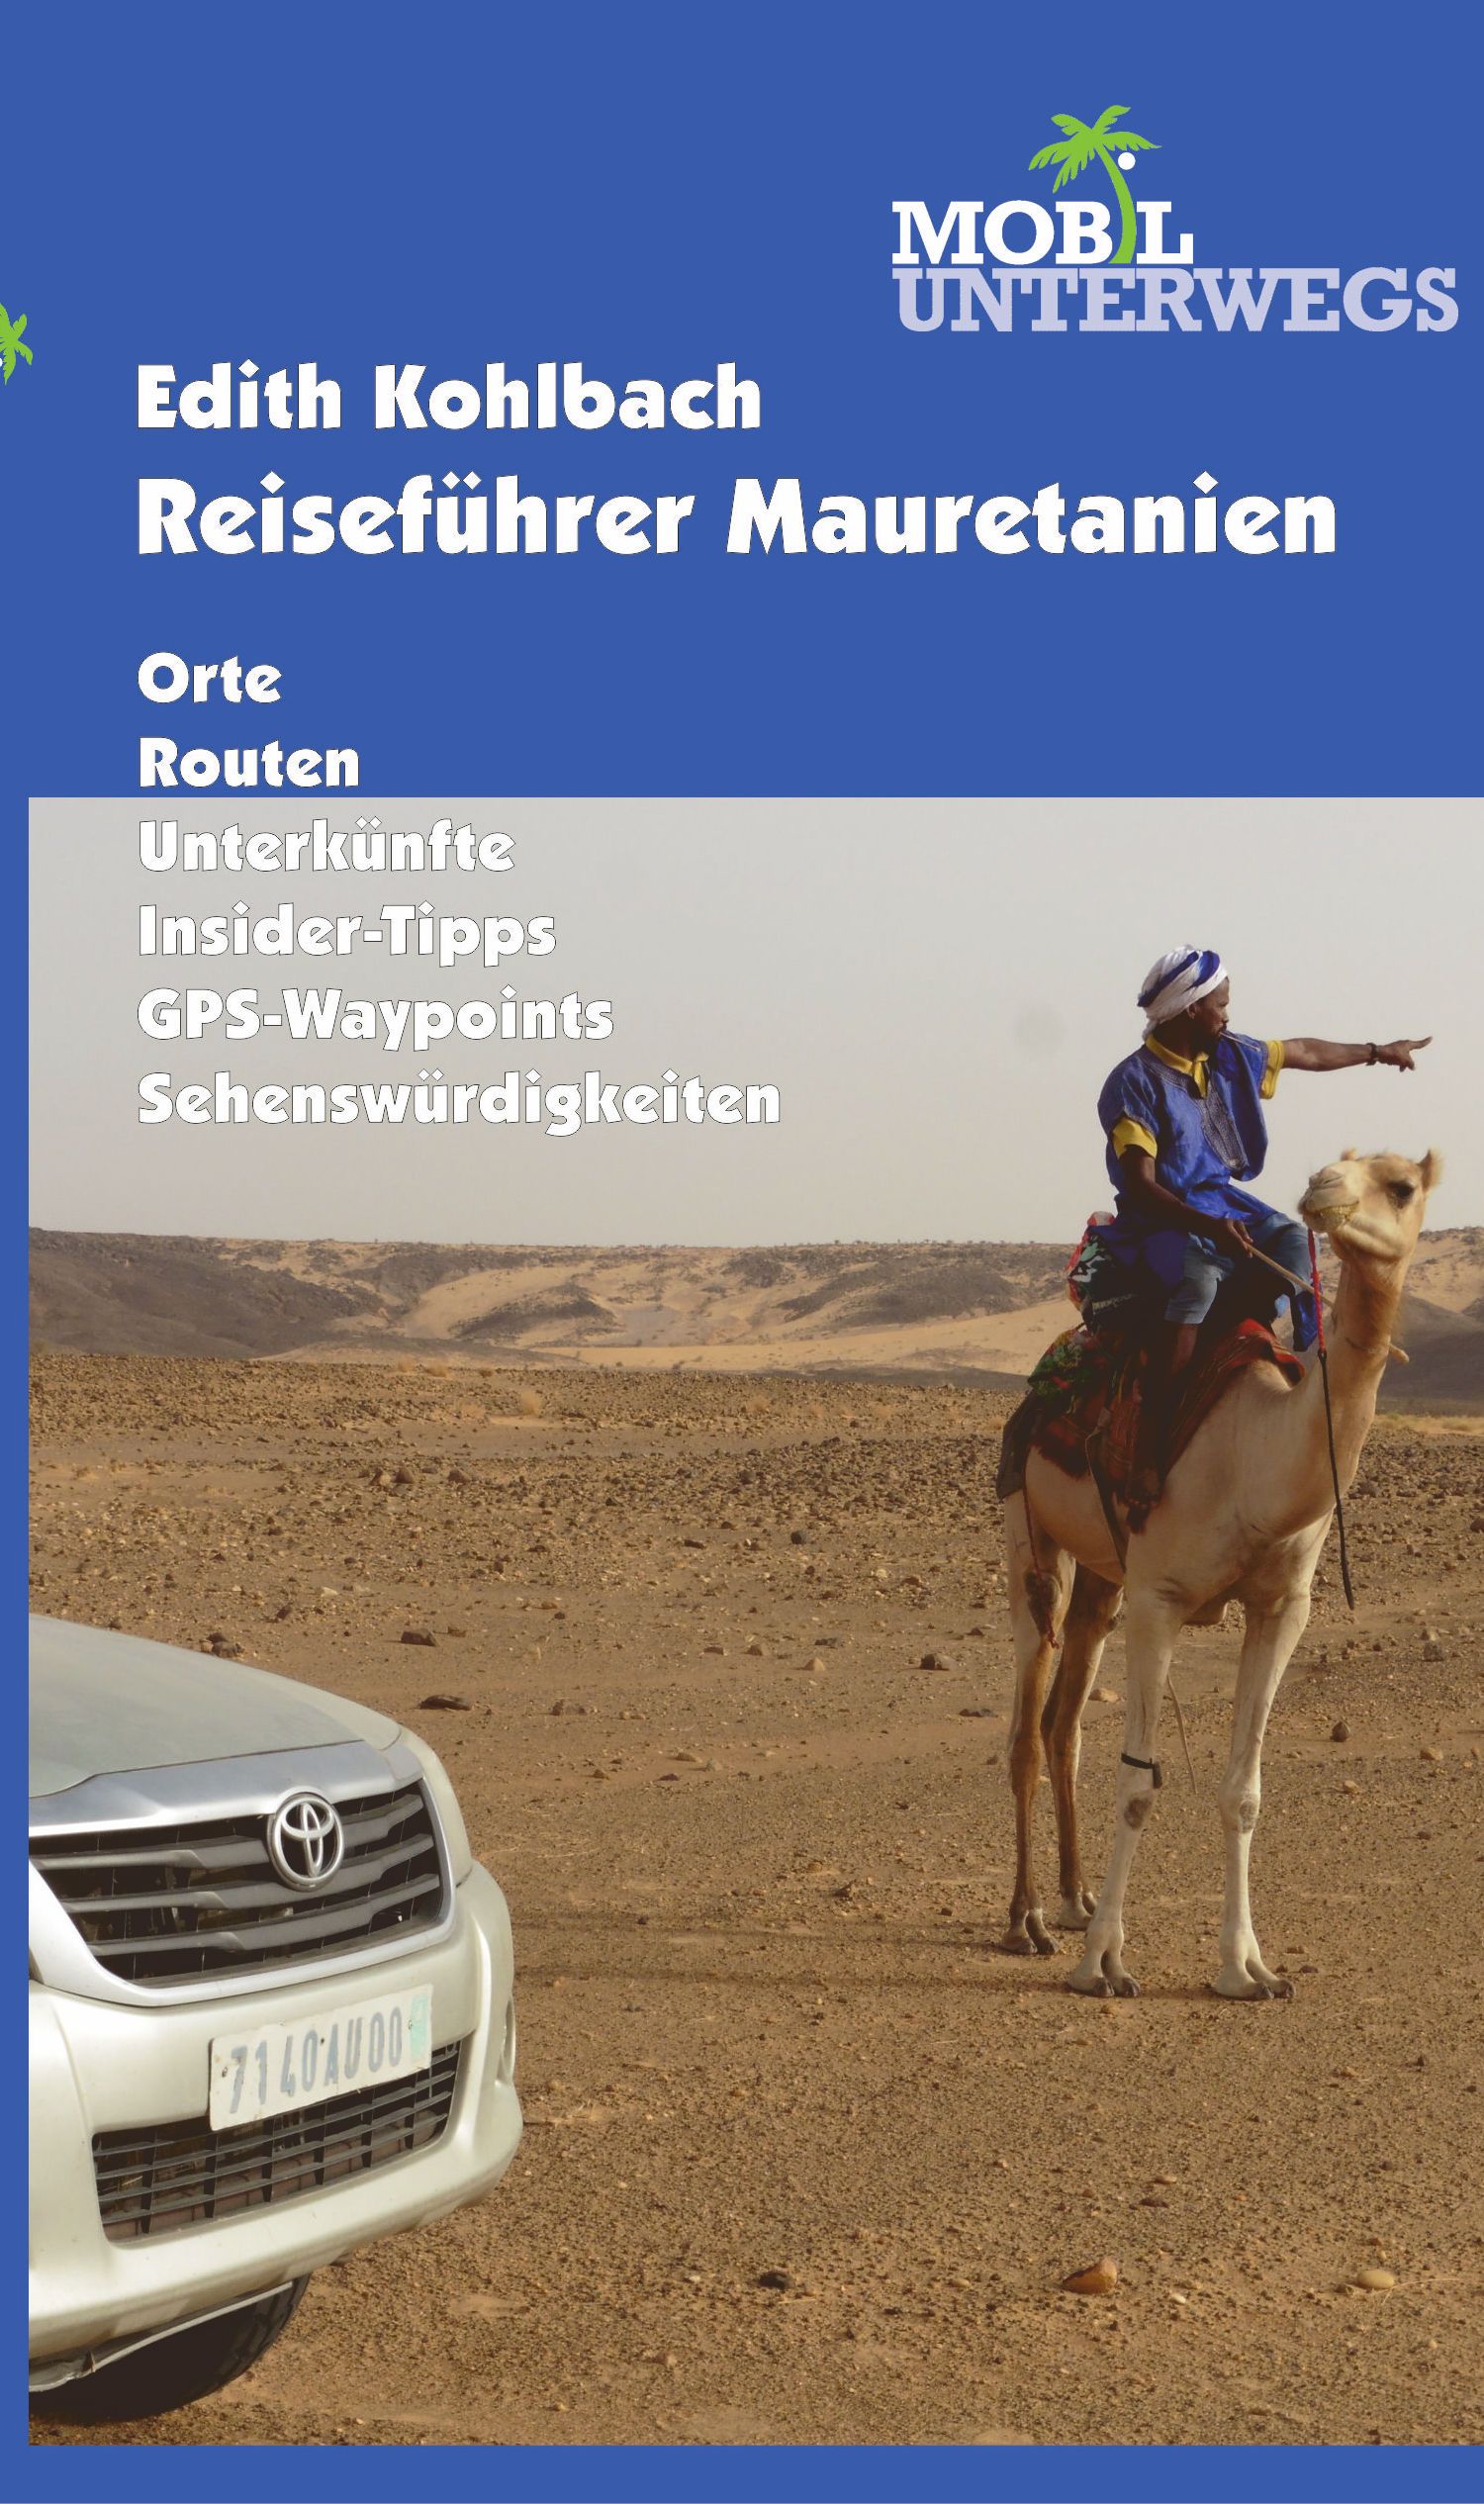 Online bestellen: Reisgids Mobil Unterwegs Reiseführer Mauretanien - Mauretanie | Edith Kohlbach verlag